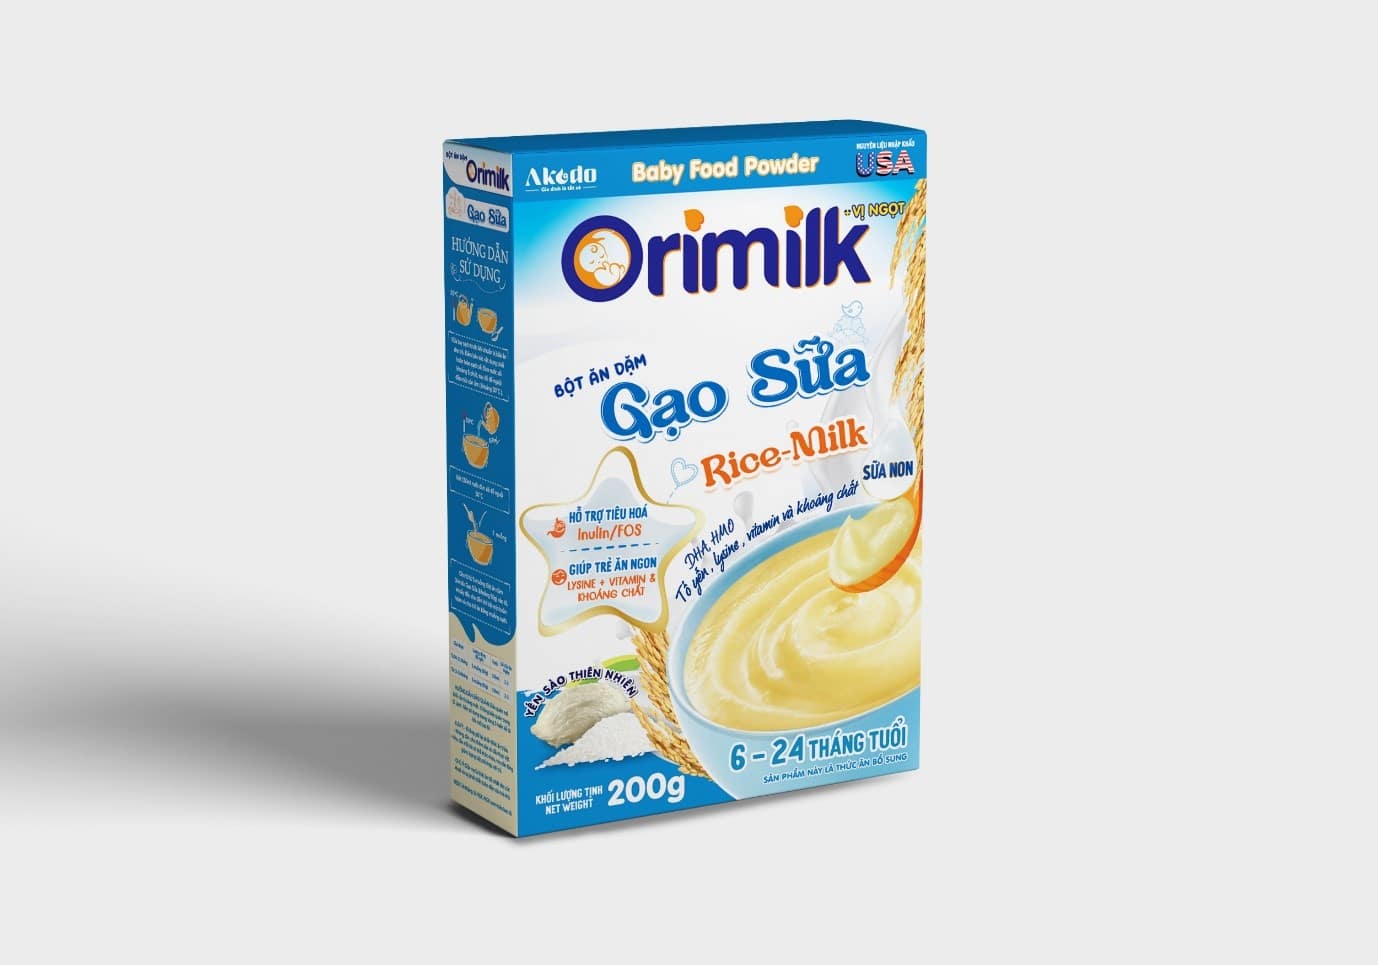 bot an dam orimilk gao sua rice milk